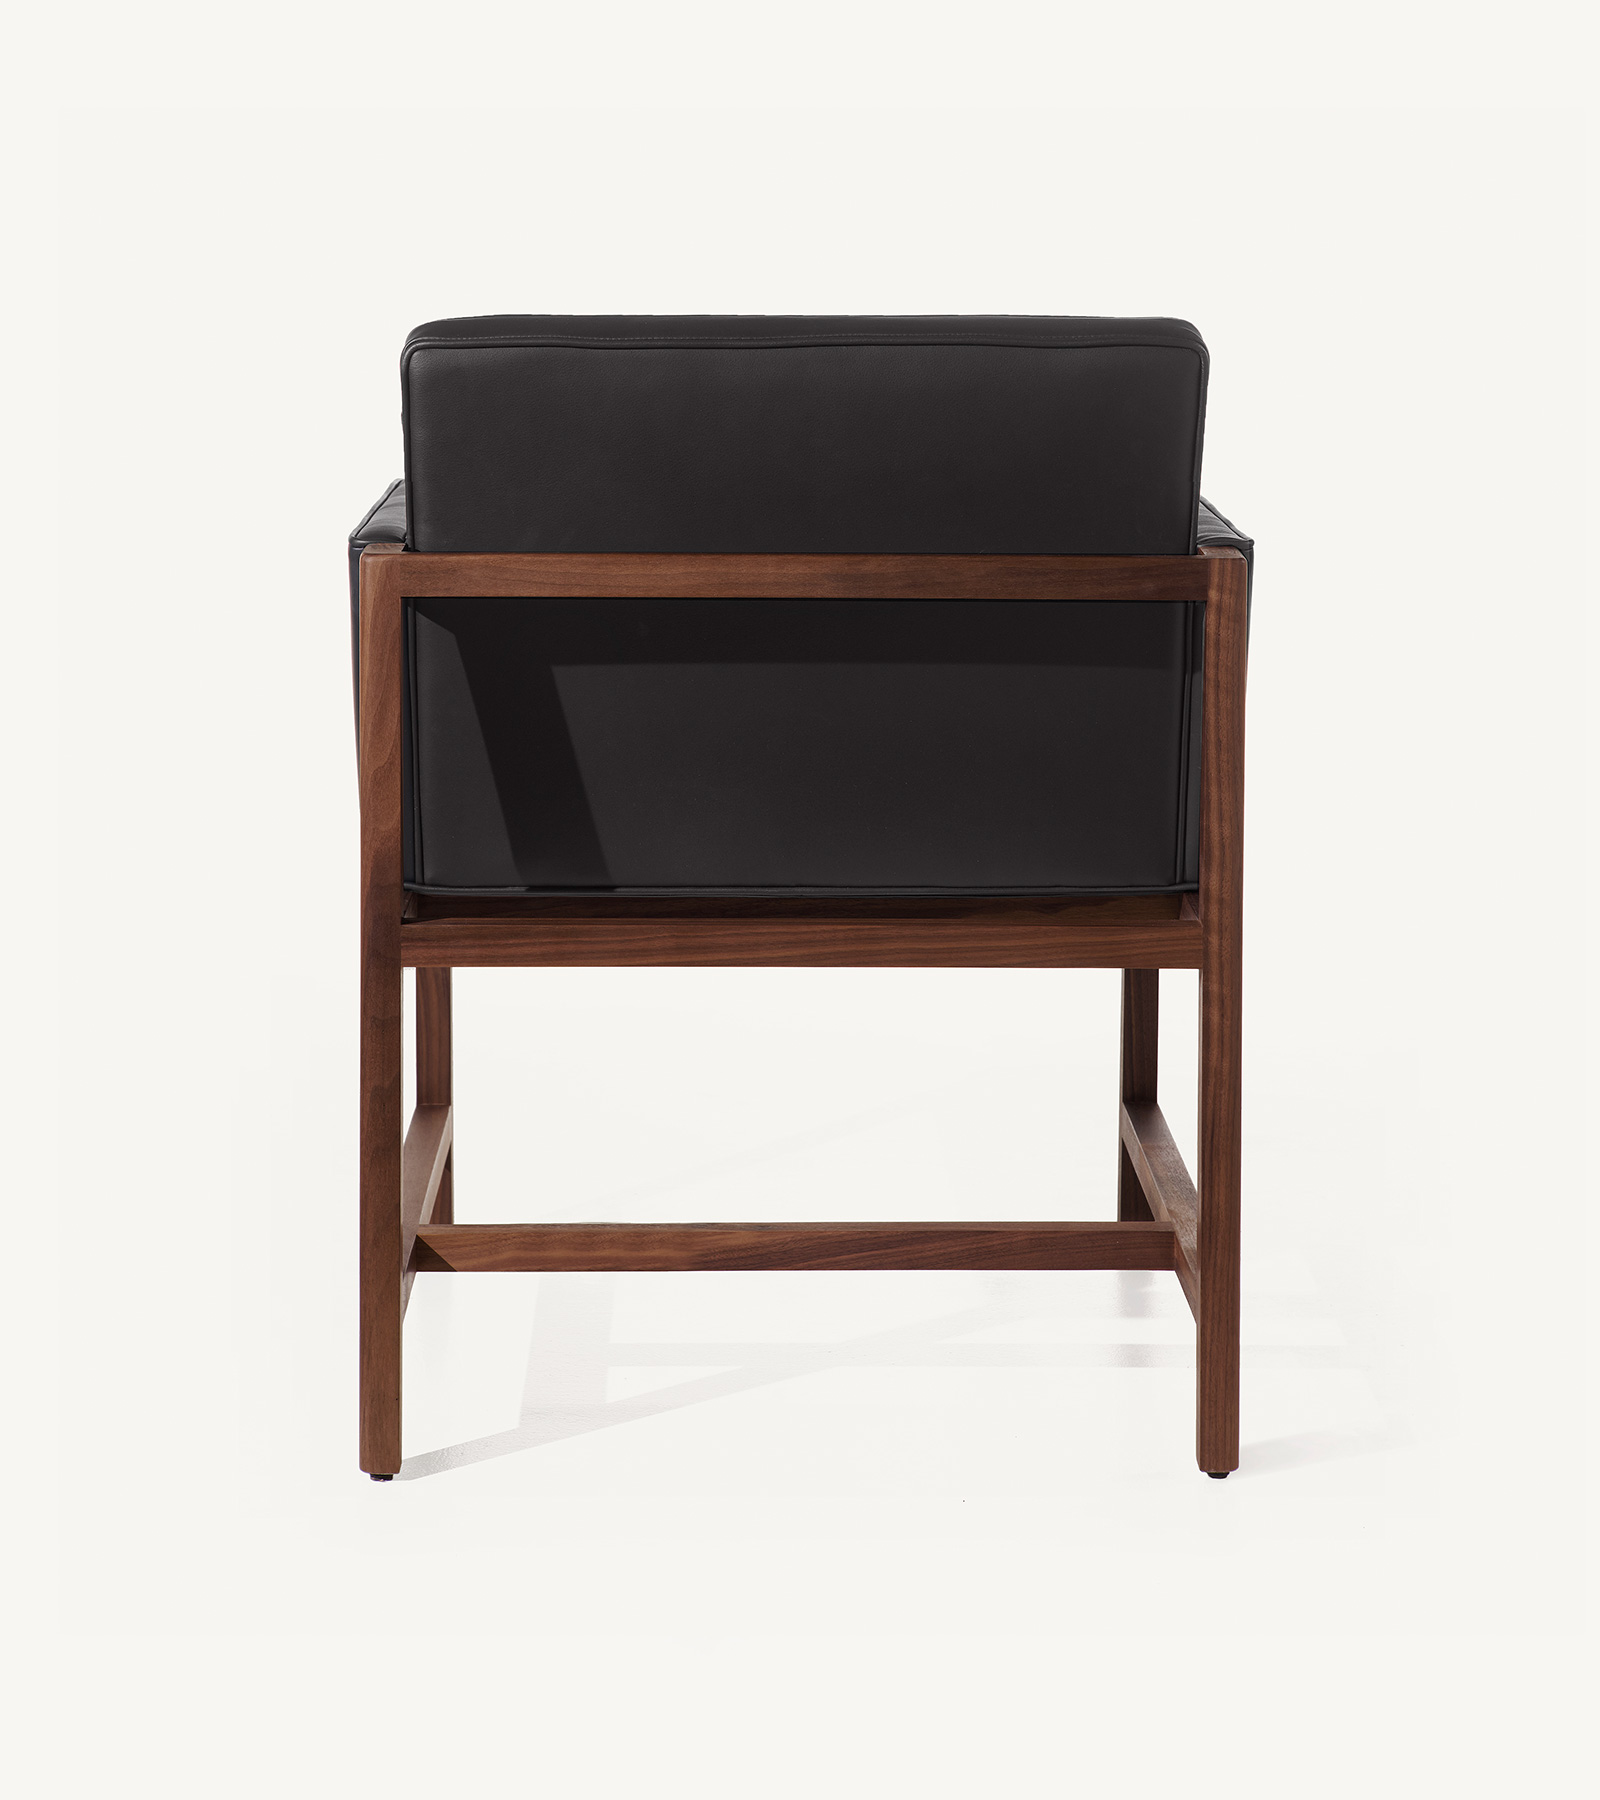 TinnappleMetz-bassamfellows-Wood-Frame-Chair-04